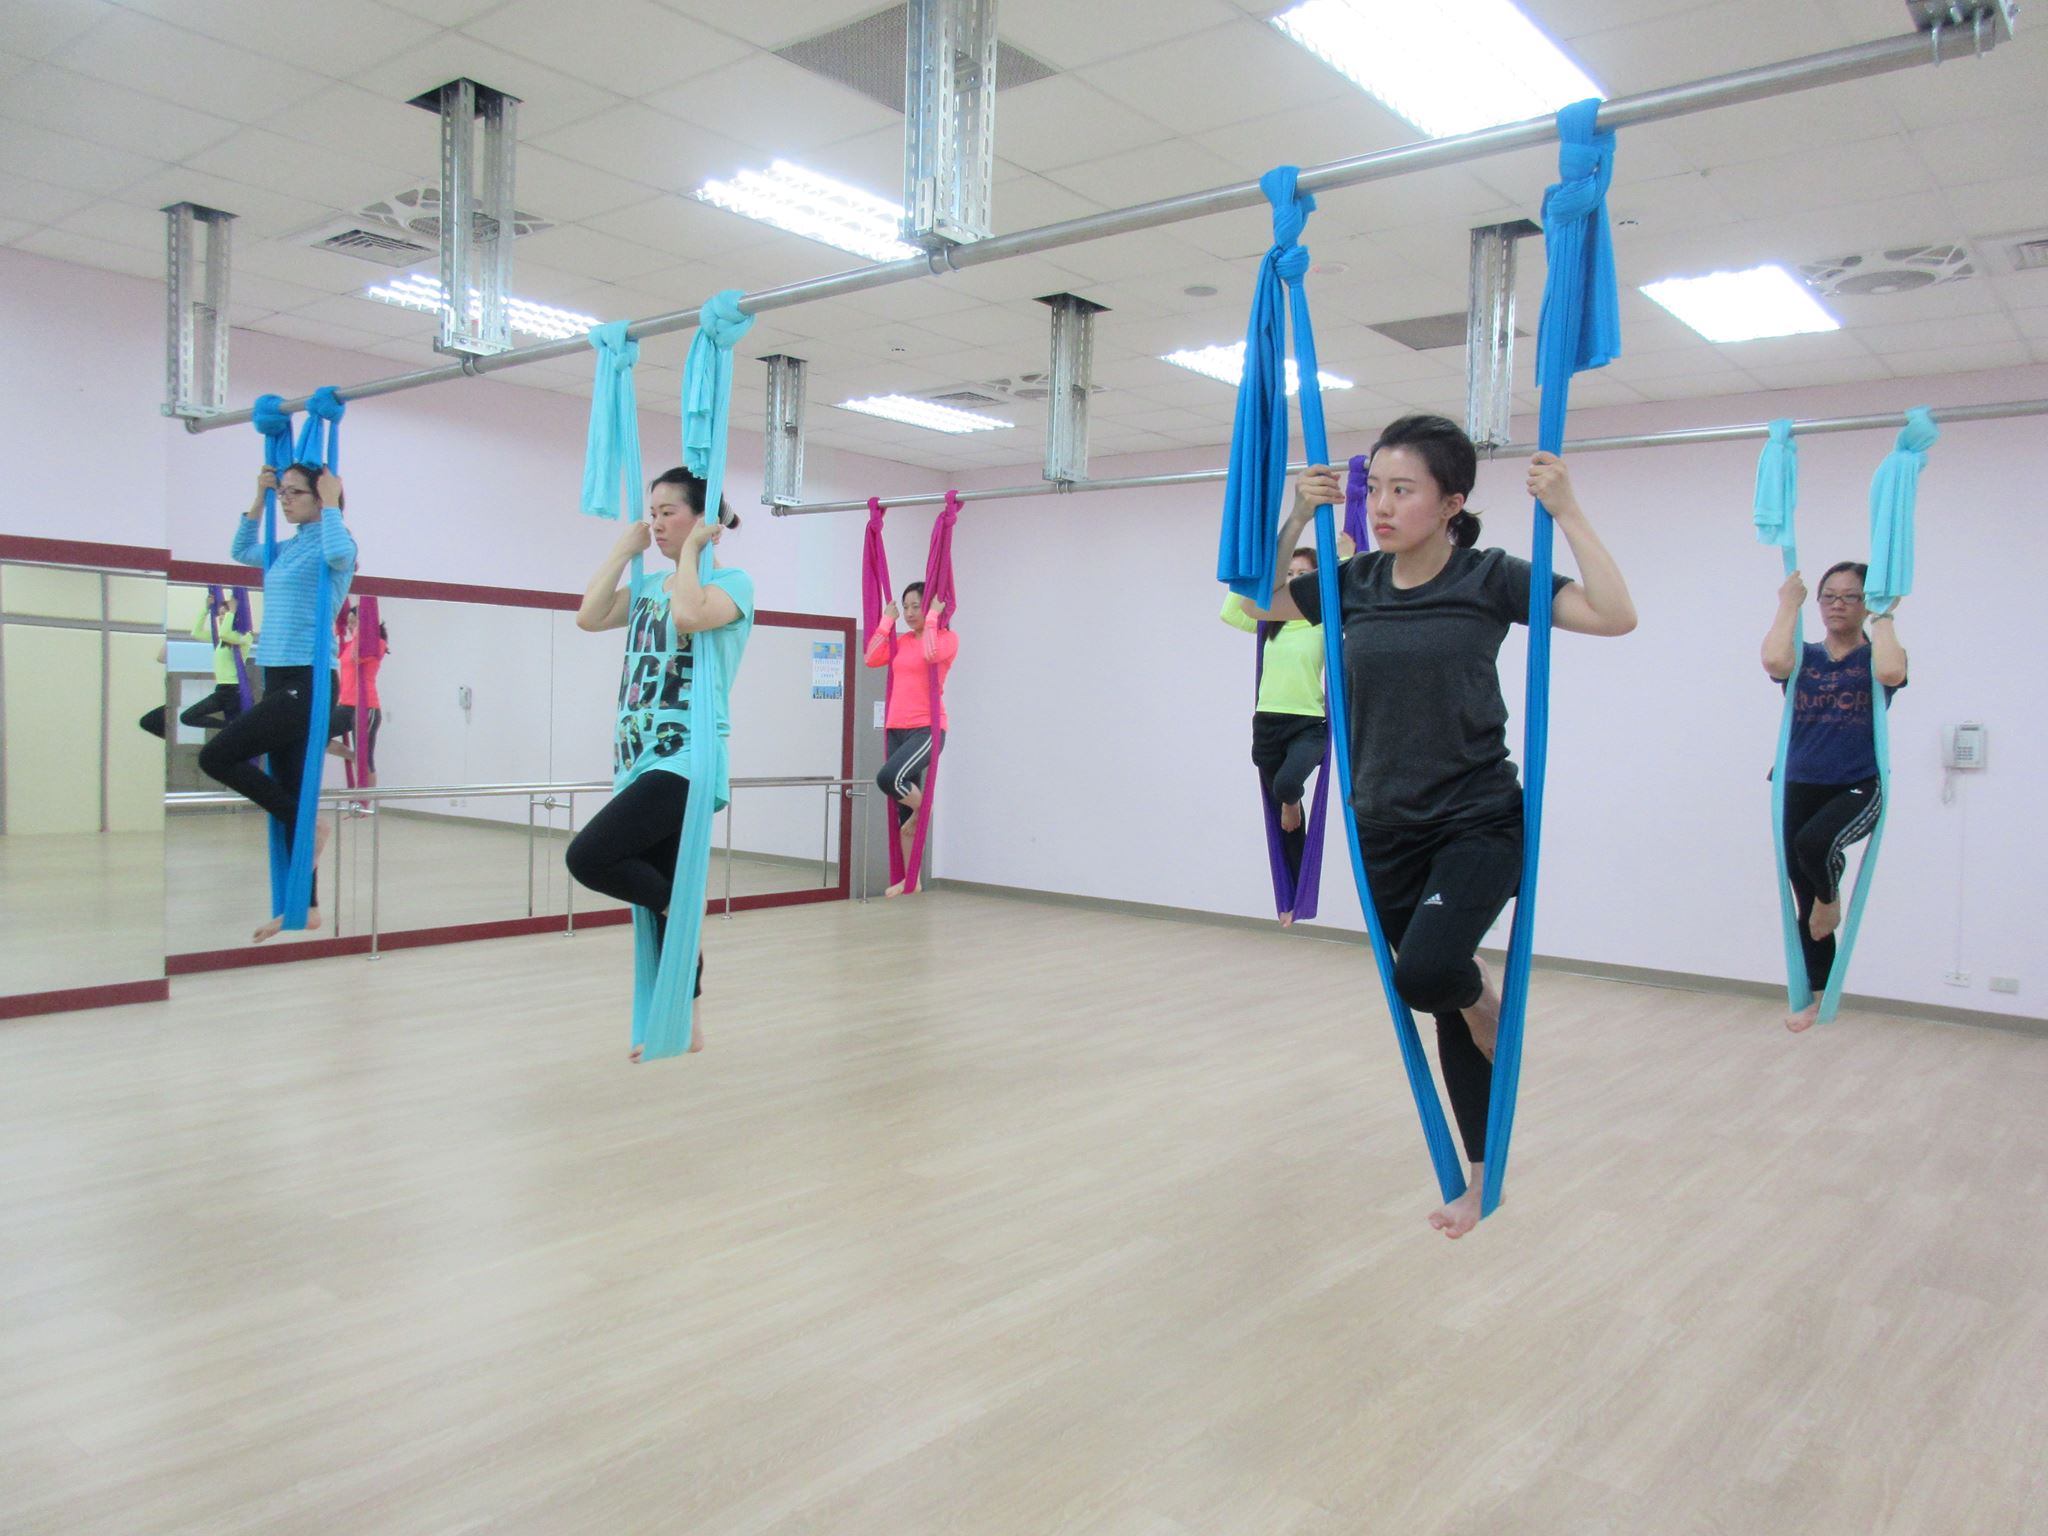 蘆洲運動中心中心春節開出空中瑜珈體驗課。官方提供